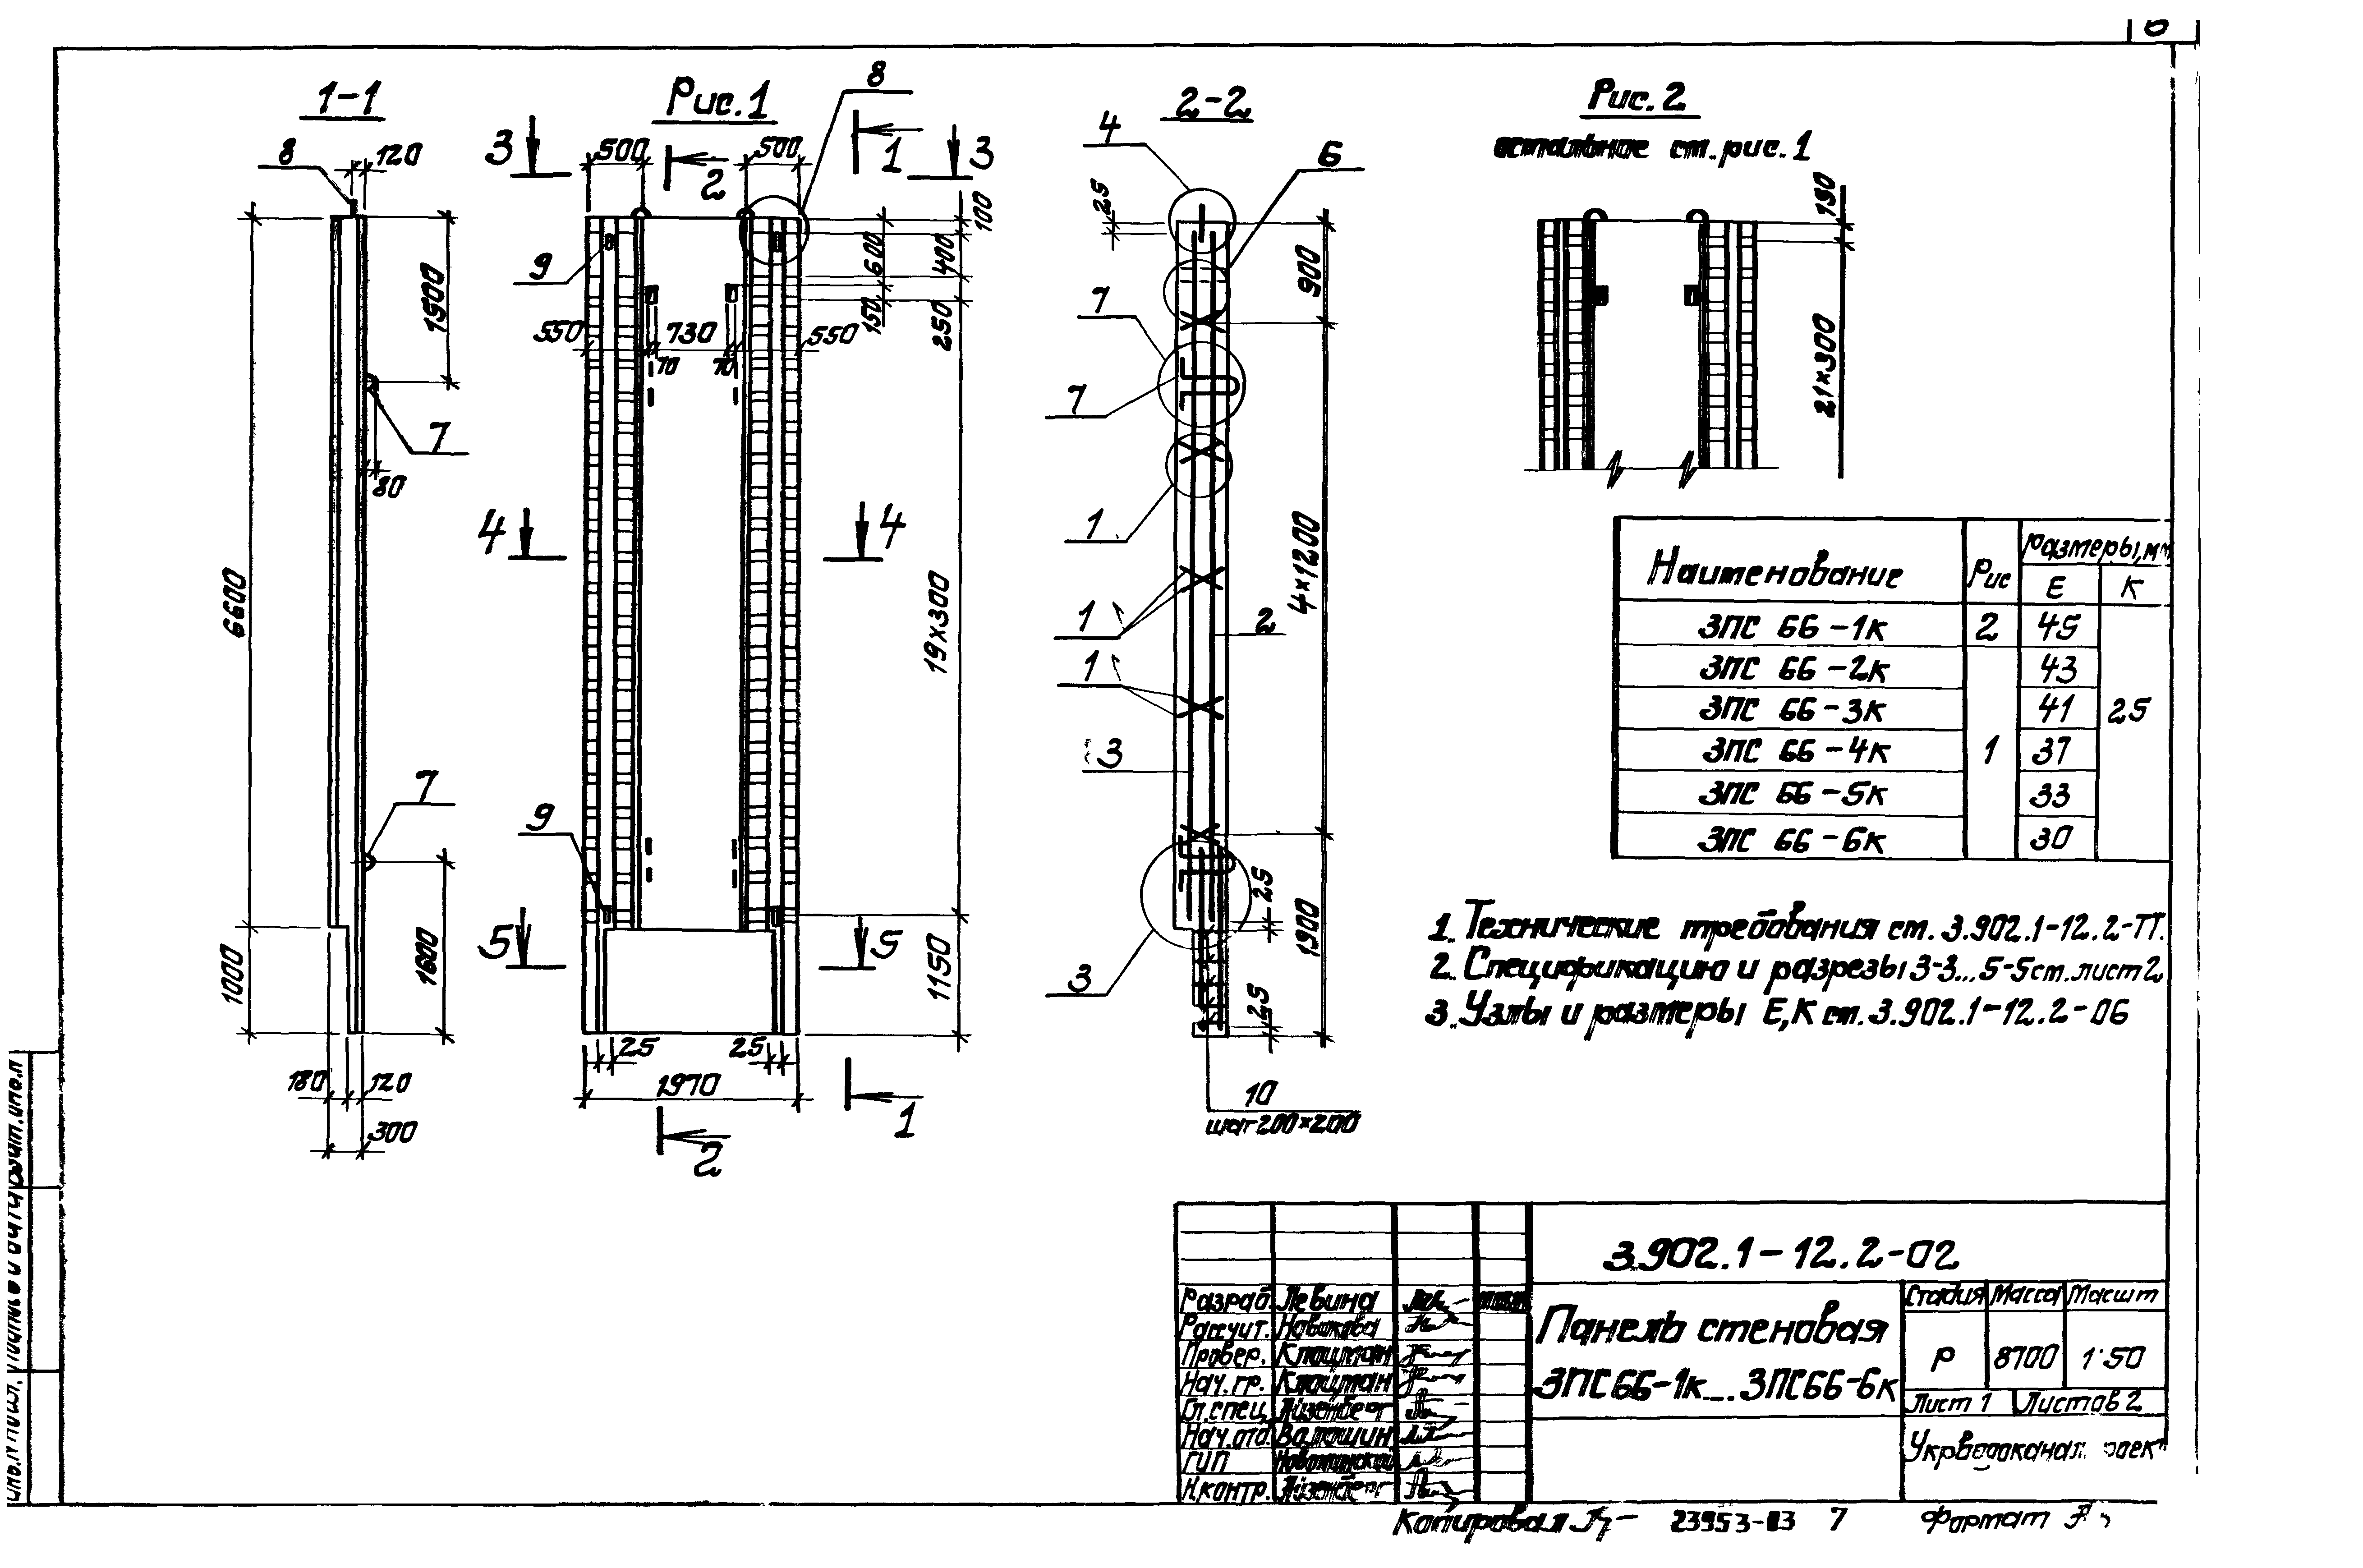 Панель стеновая 3ПС66-3к Серия 3.902.1-12, вып.2